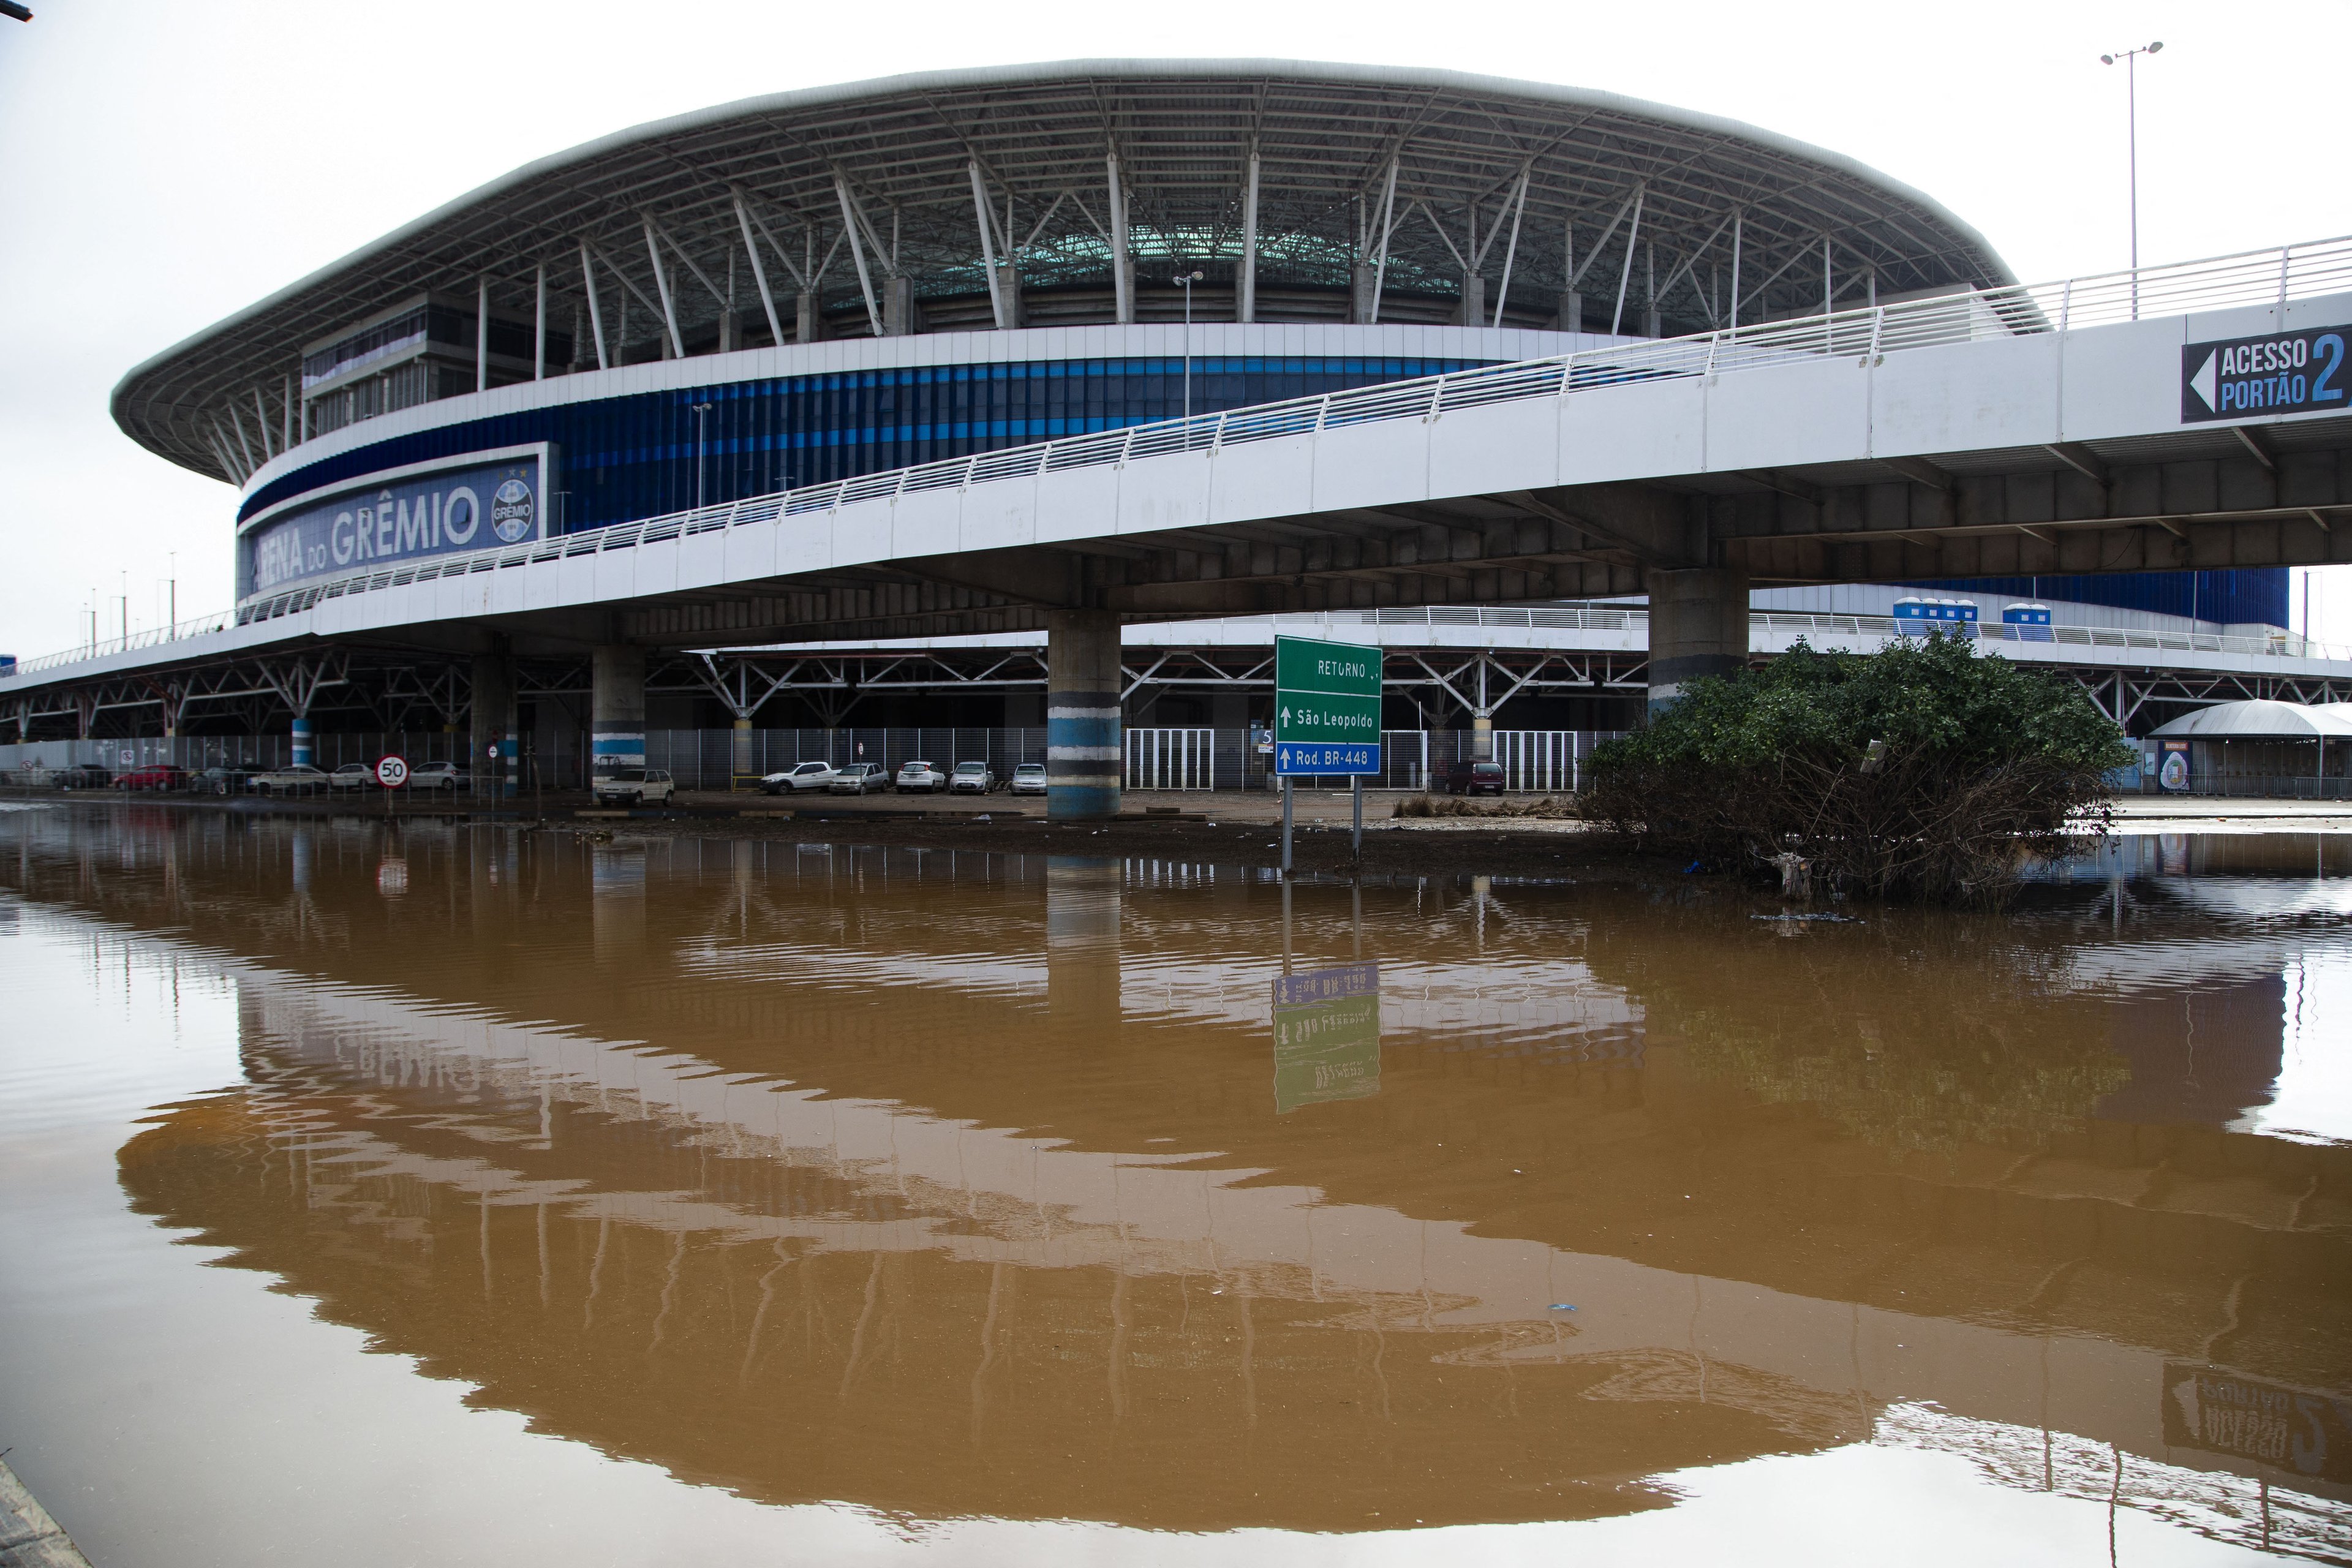 Vista das áreas inundadas ao redor do estádio Arena do Grêmio em Porto Alegre